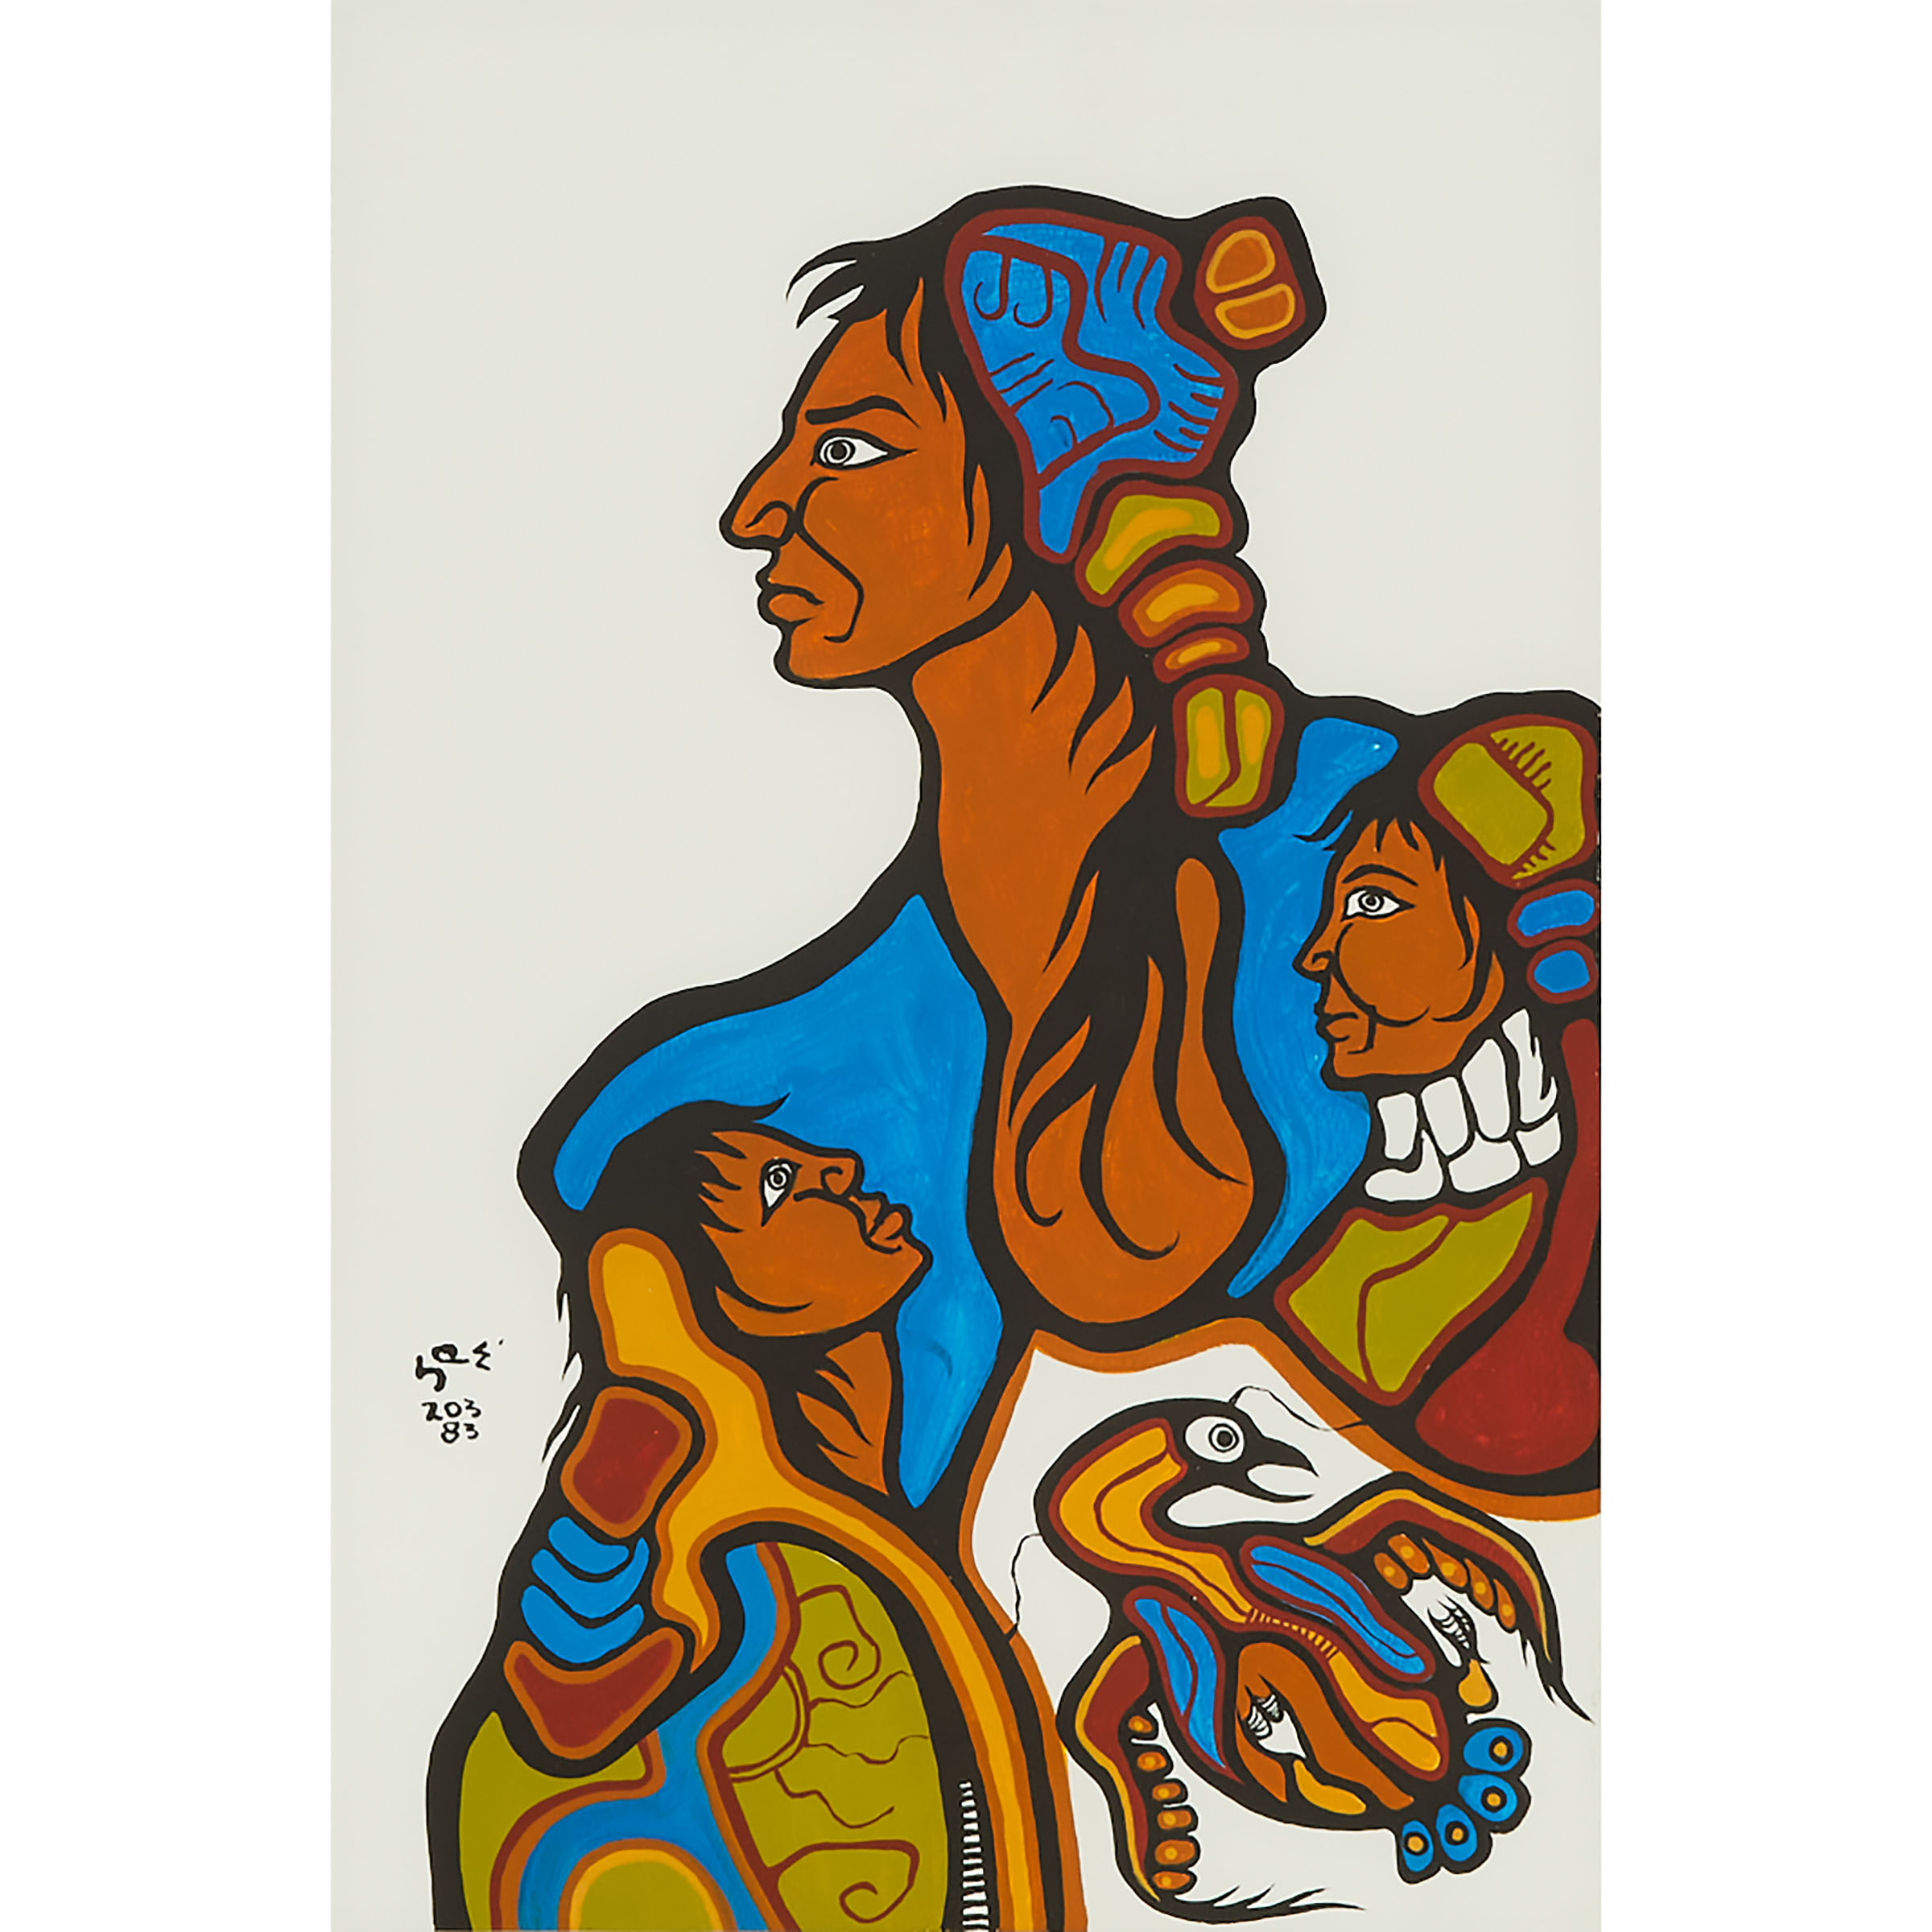 Saul Williams (b. 1954), Anishinaabe (Ojibwe)